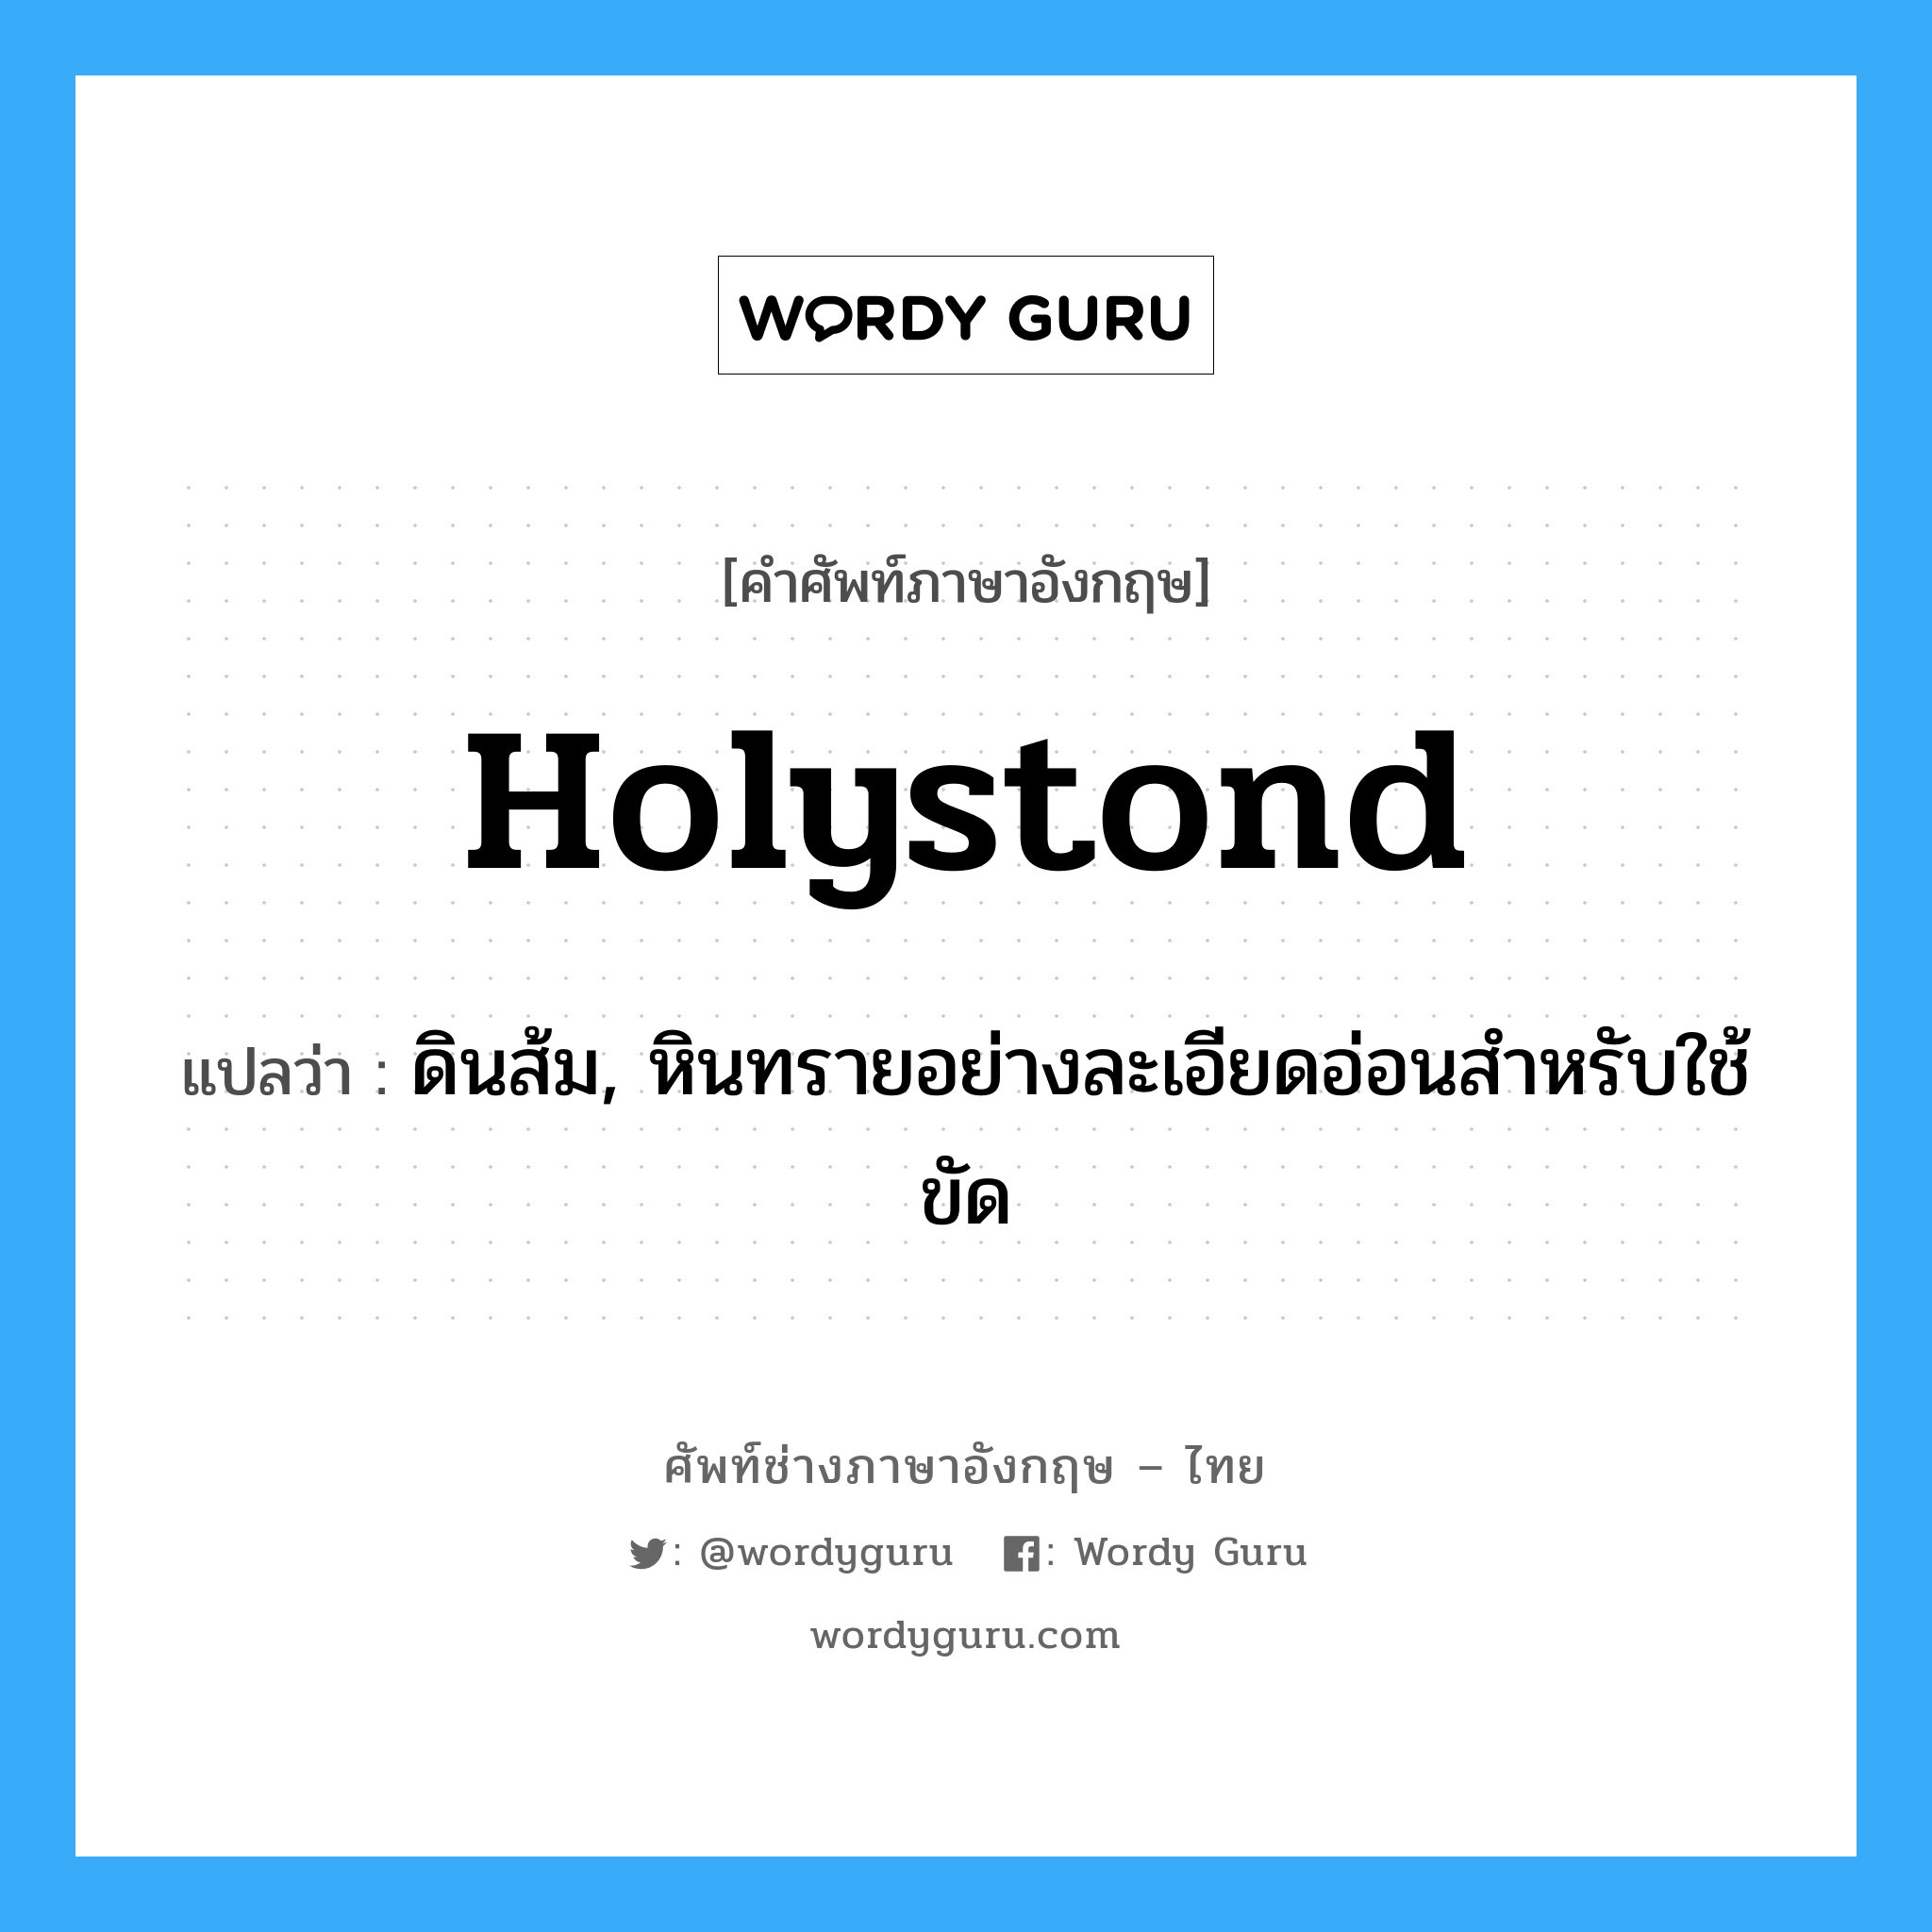 holystond แปลว่า?, คำศัพท์ช่างภาษาอังกฤษ - ไทย holystond คำศัพท์ภาษาอังกฤษ holystond แปลว่า ดินส้ม, หินทรายอย่างละเอียดอ่อนสำหรับใช้ขัด